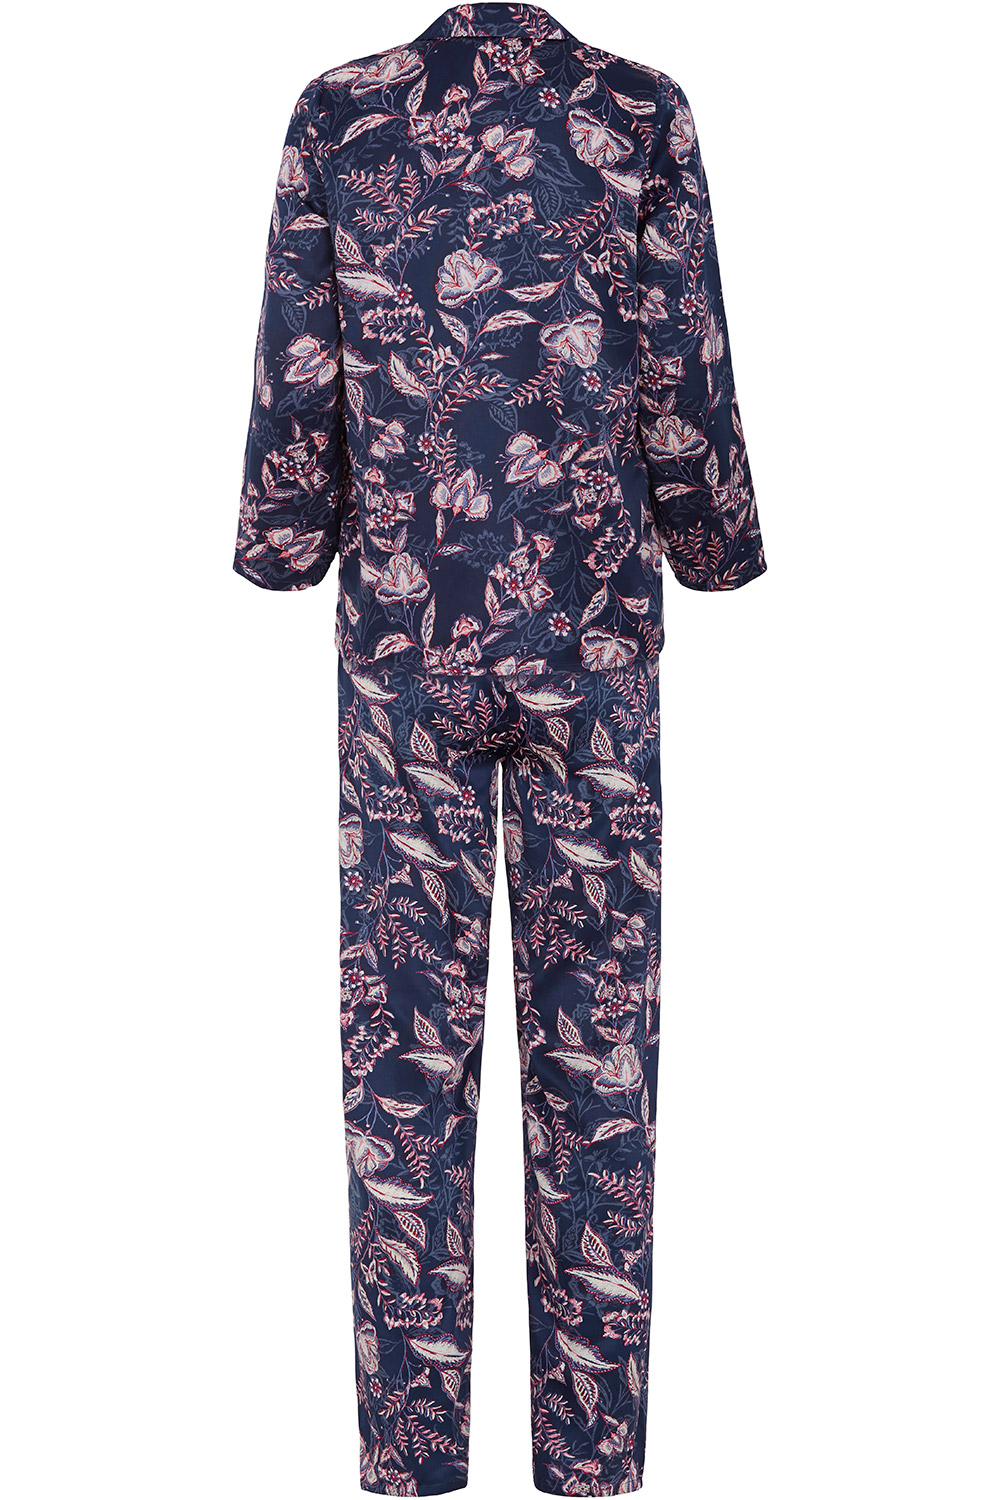 Satin Floral Pyjamas